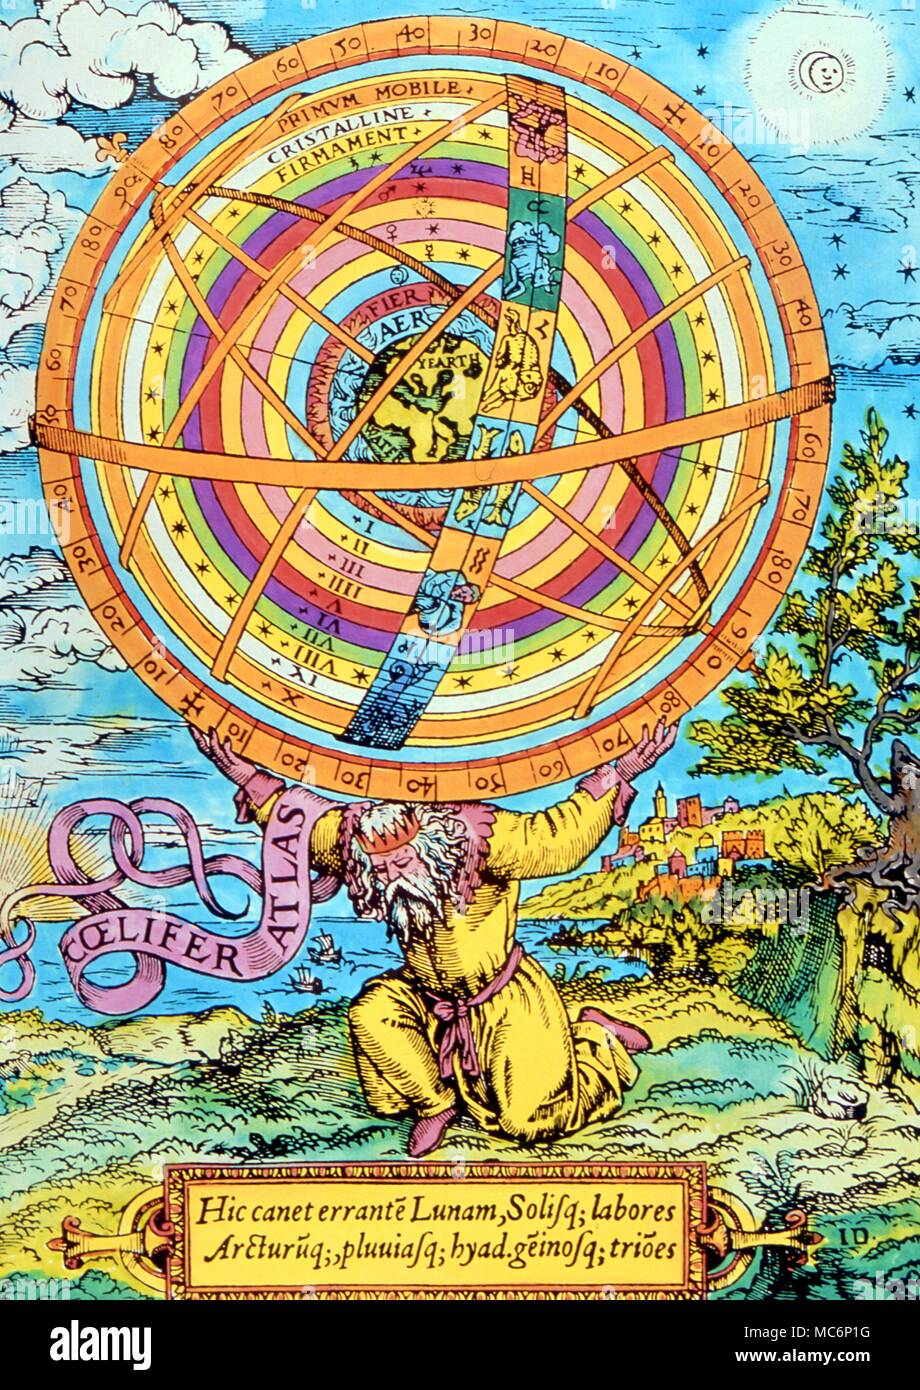 La astrología en general el gigante Atlas llevando el modelo geocéntrico de las esferas celestes desde el primum mobile a la tierra después de una xilografía del siglo XVI. Foto de stock